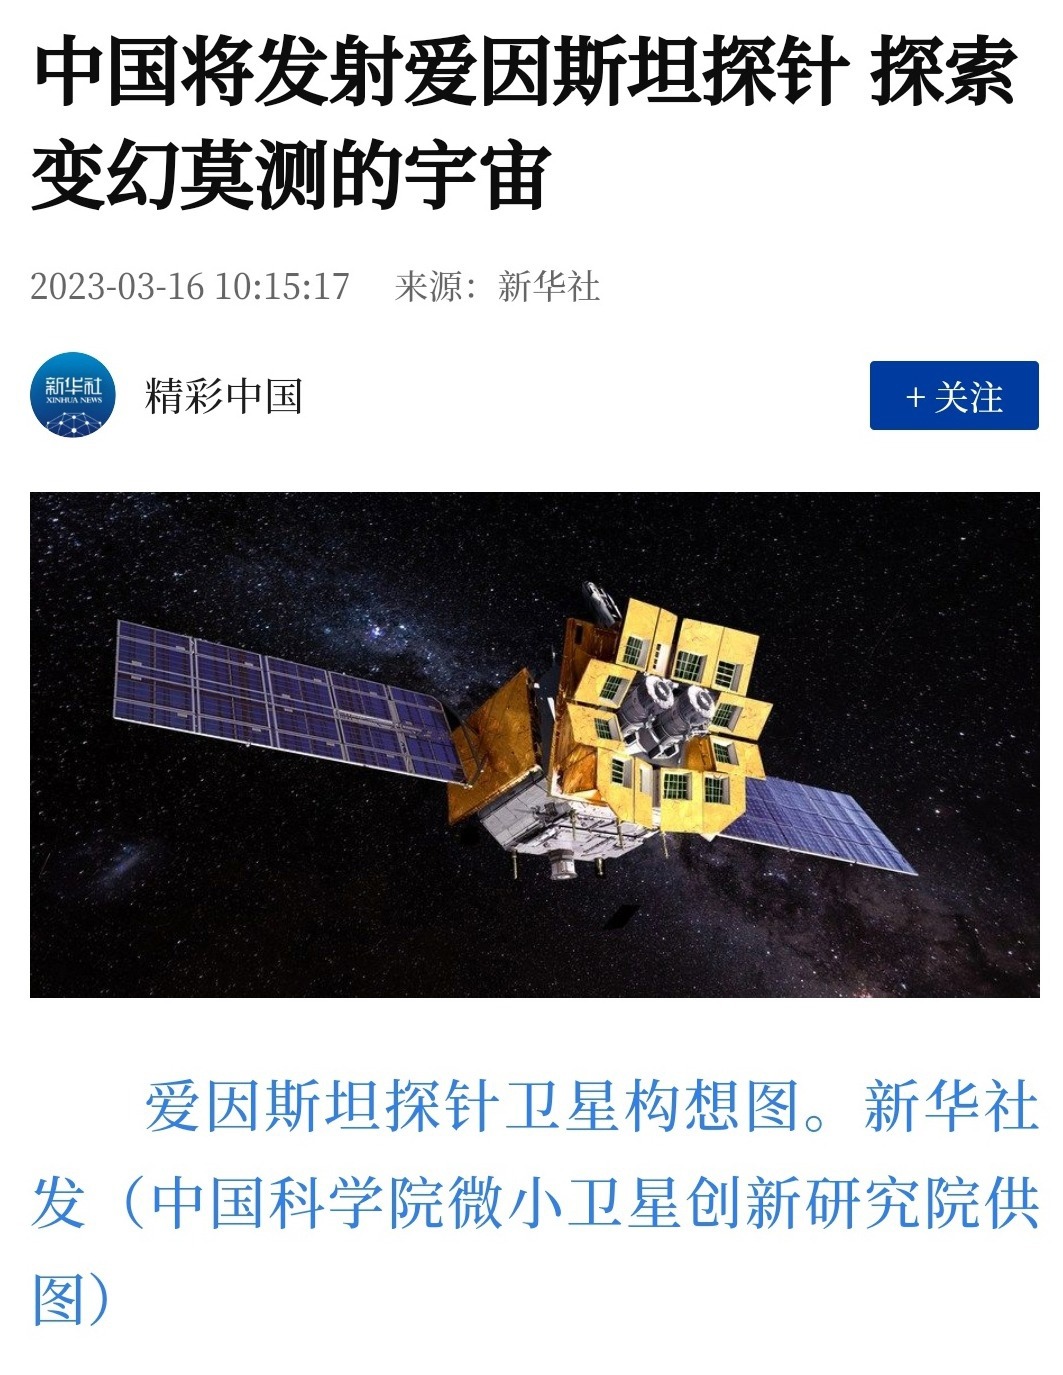 我国成功发射爱因斯坦探针卫星-搜狐大视野-搜狐新闻